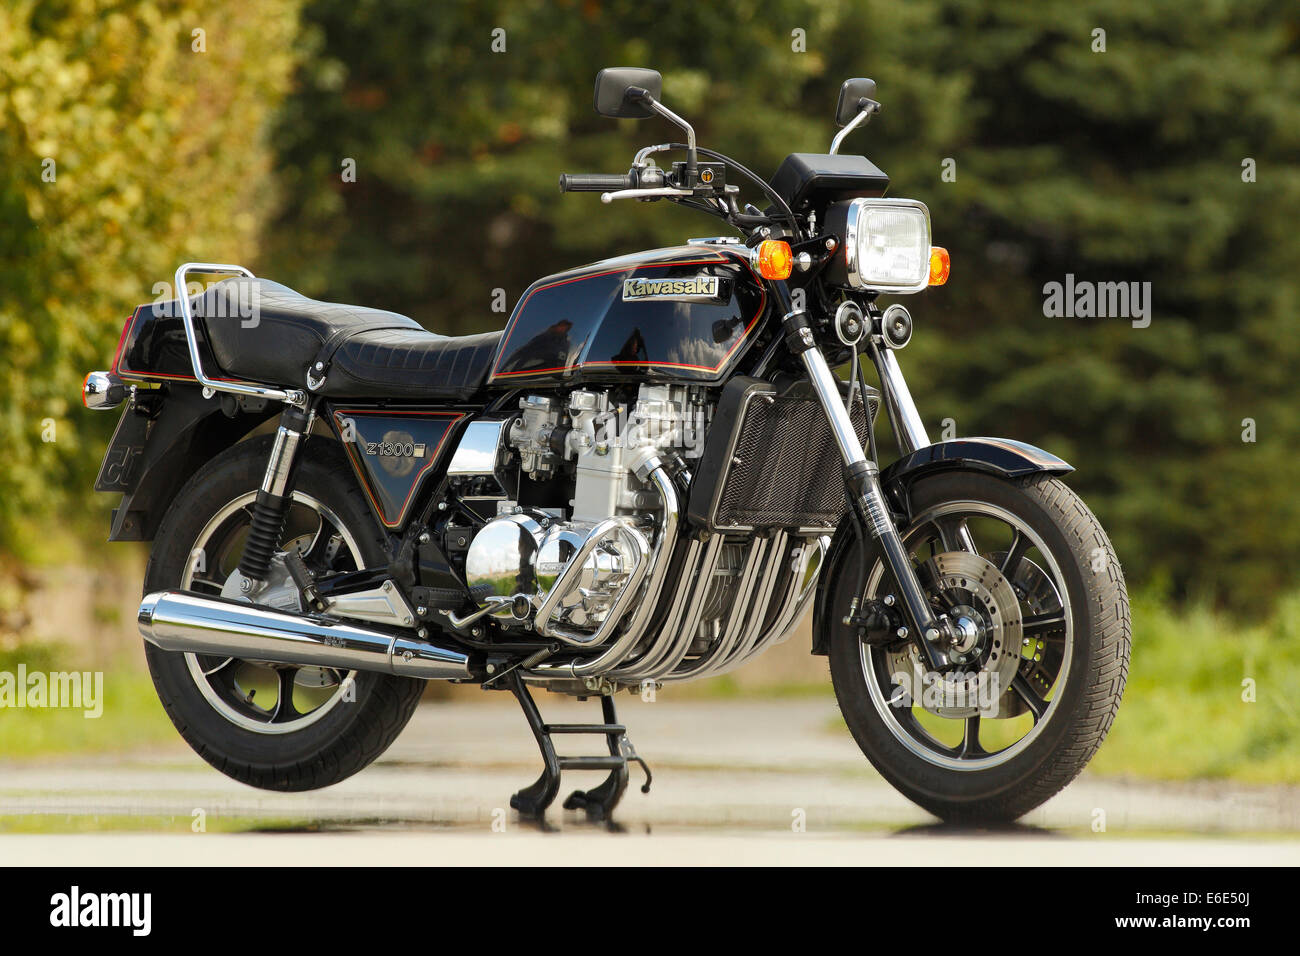 Kawasaki Motorrad und -bilder Kaufen - Alamy